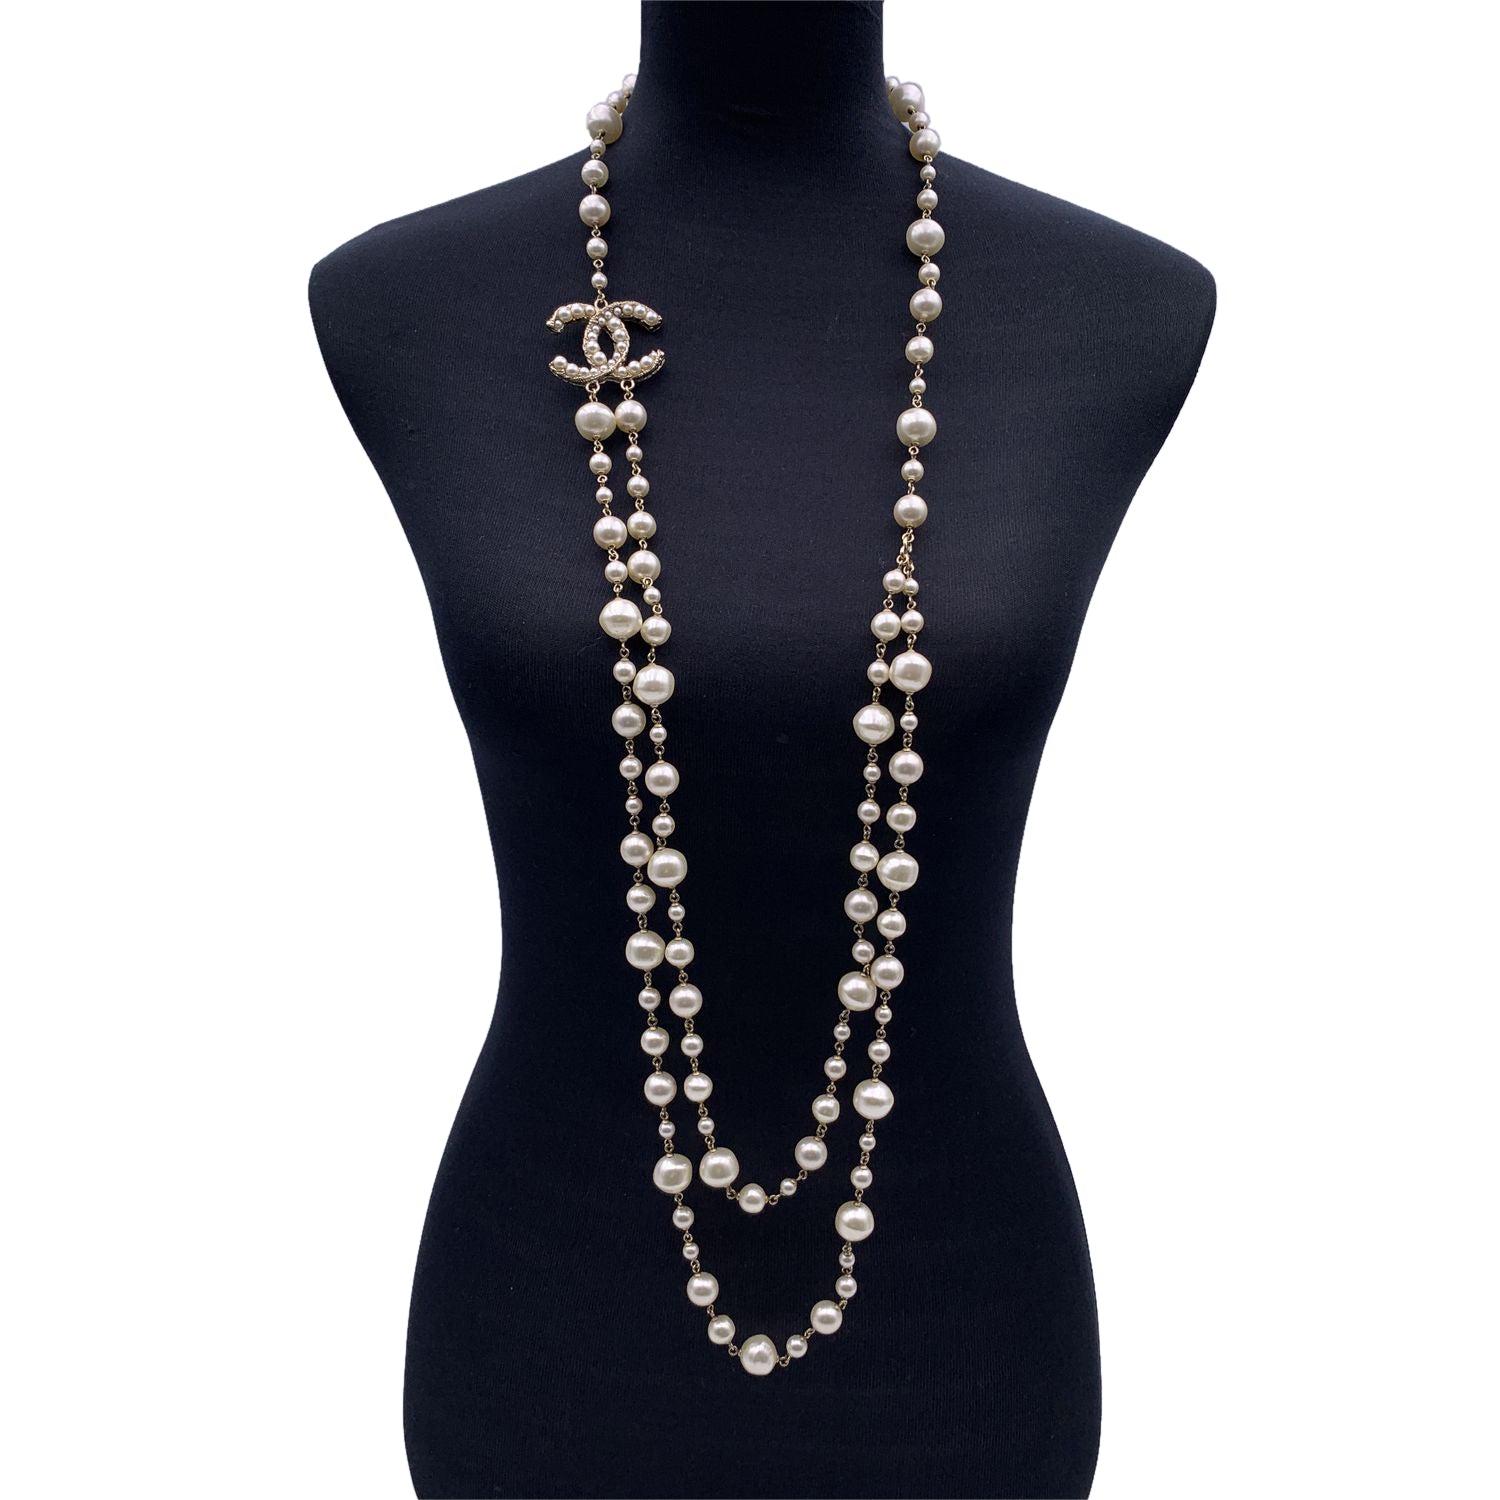 Long collier à double maille en métal doré léger de Chanel. Il comporte des perles artificielles de différentes tailles et le logo CC est orné de petites perles artificielles. Fermeture en forme de homard. La languette ovale 'CHANEL - A11 CC A- Made